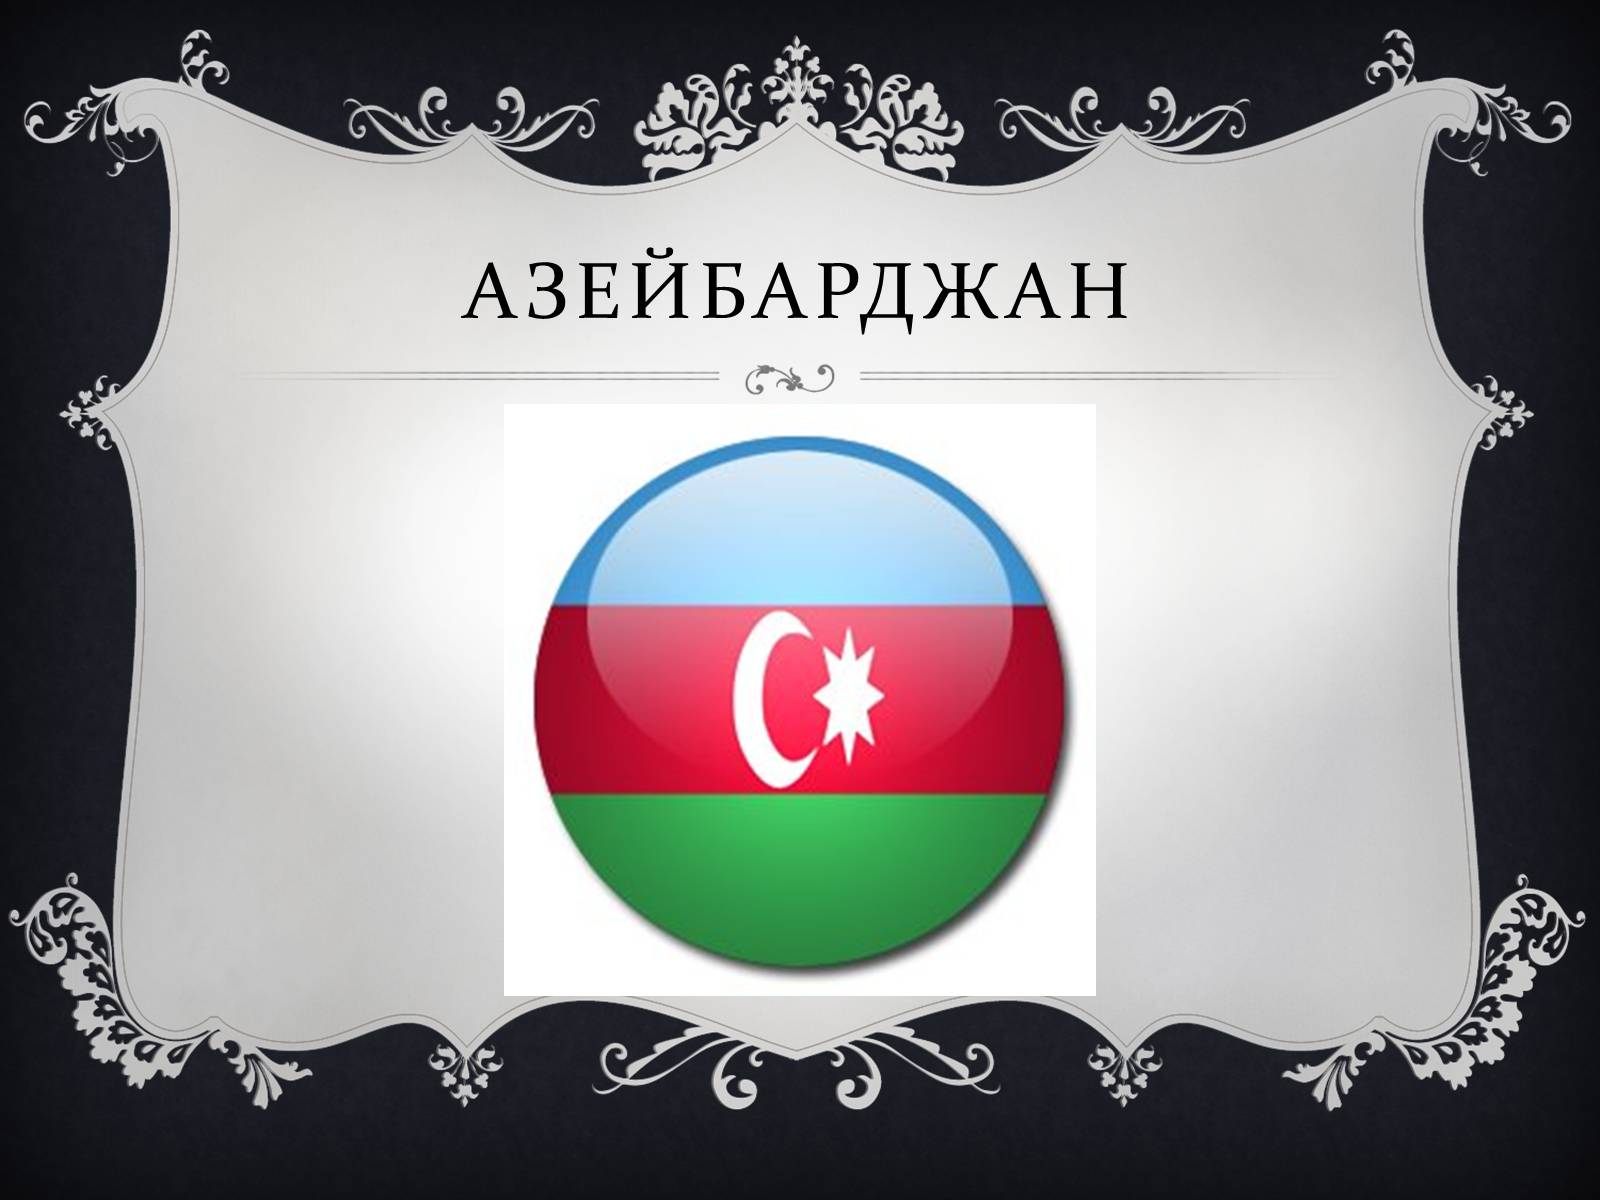 Проект азербайджан. Азейбарджан презентация. Азербайджан фон для презентации. Азербайджанский фон для презентации. Интересные факты про Азейбарджан.